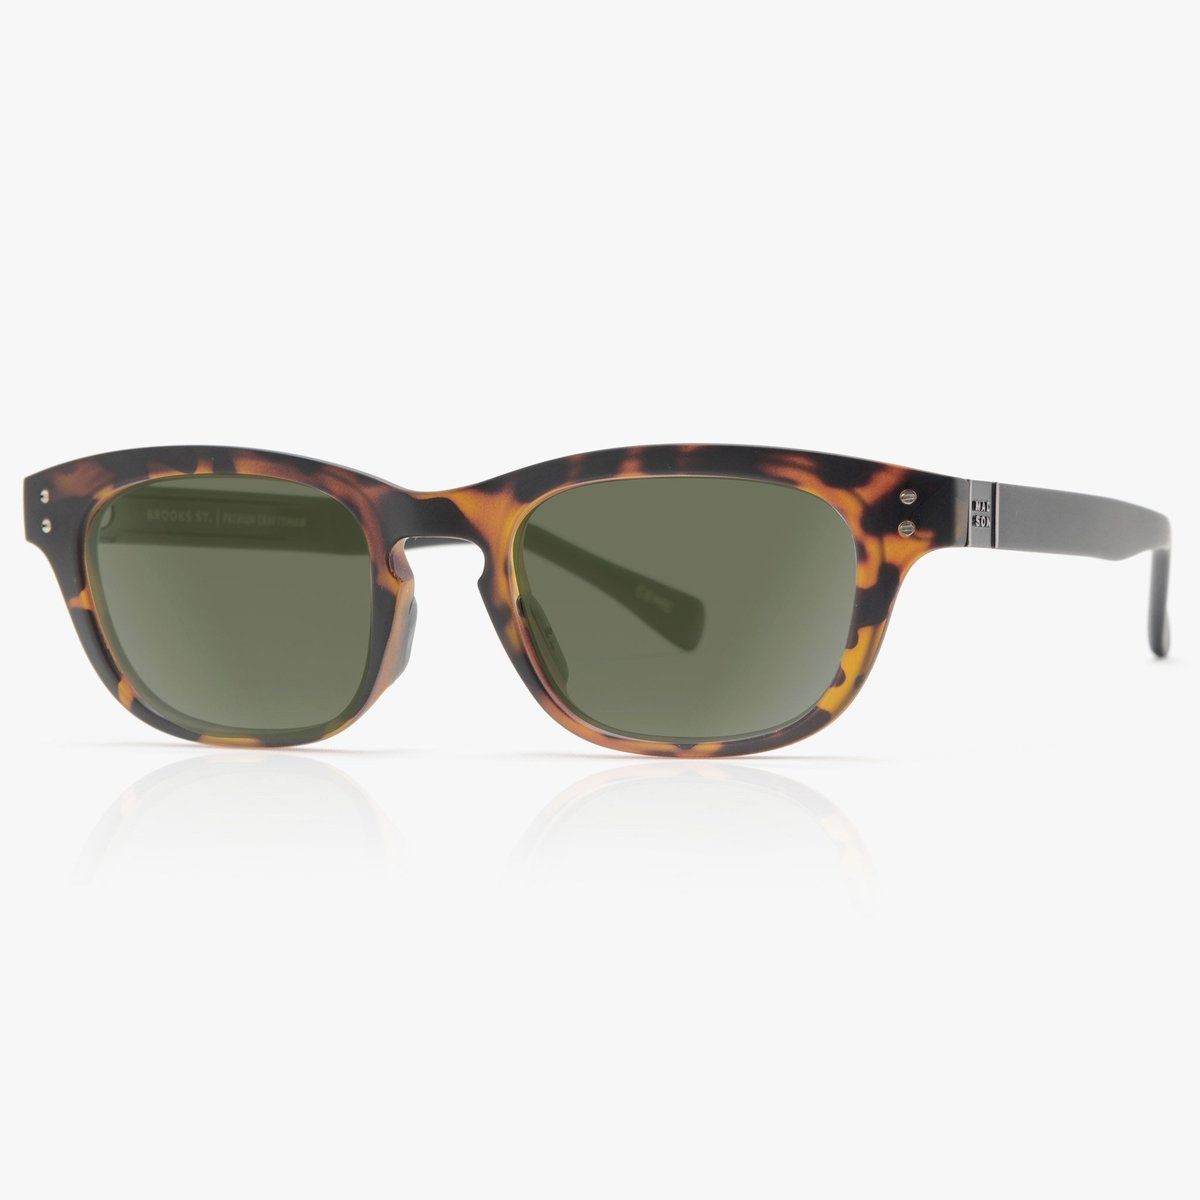 Madson Brooks St. Sunglasses Tortoise Matte-Black / Vintage G15 Grey - SantoLoco Hawaii